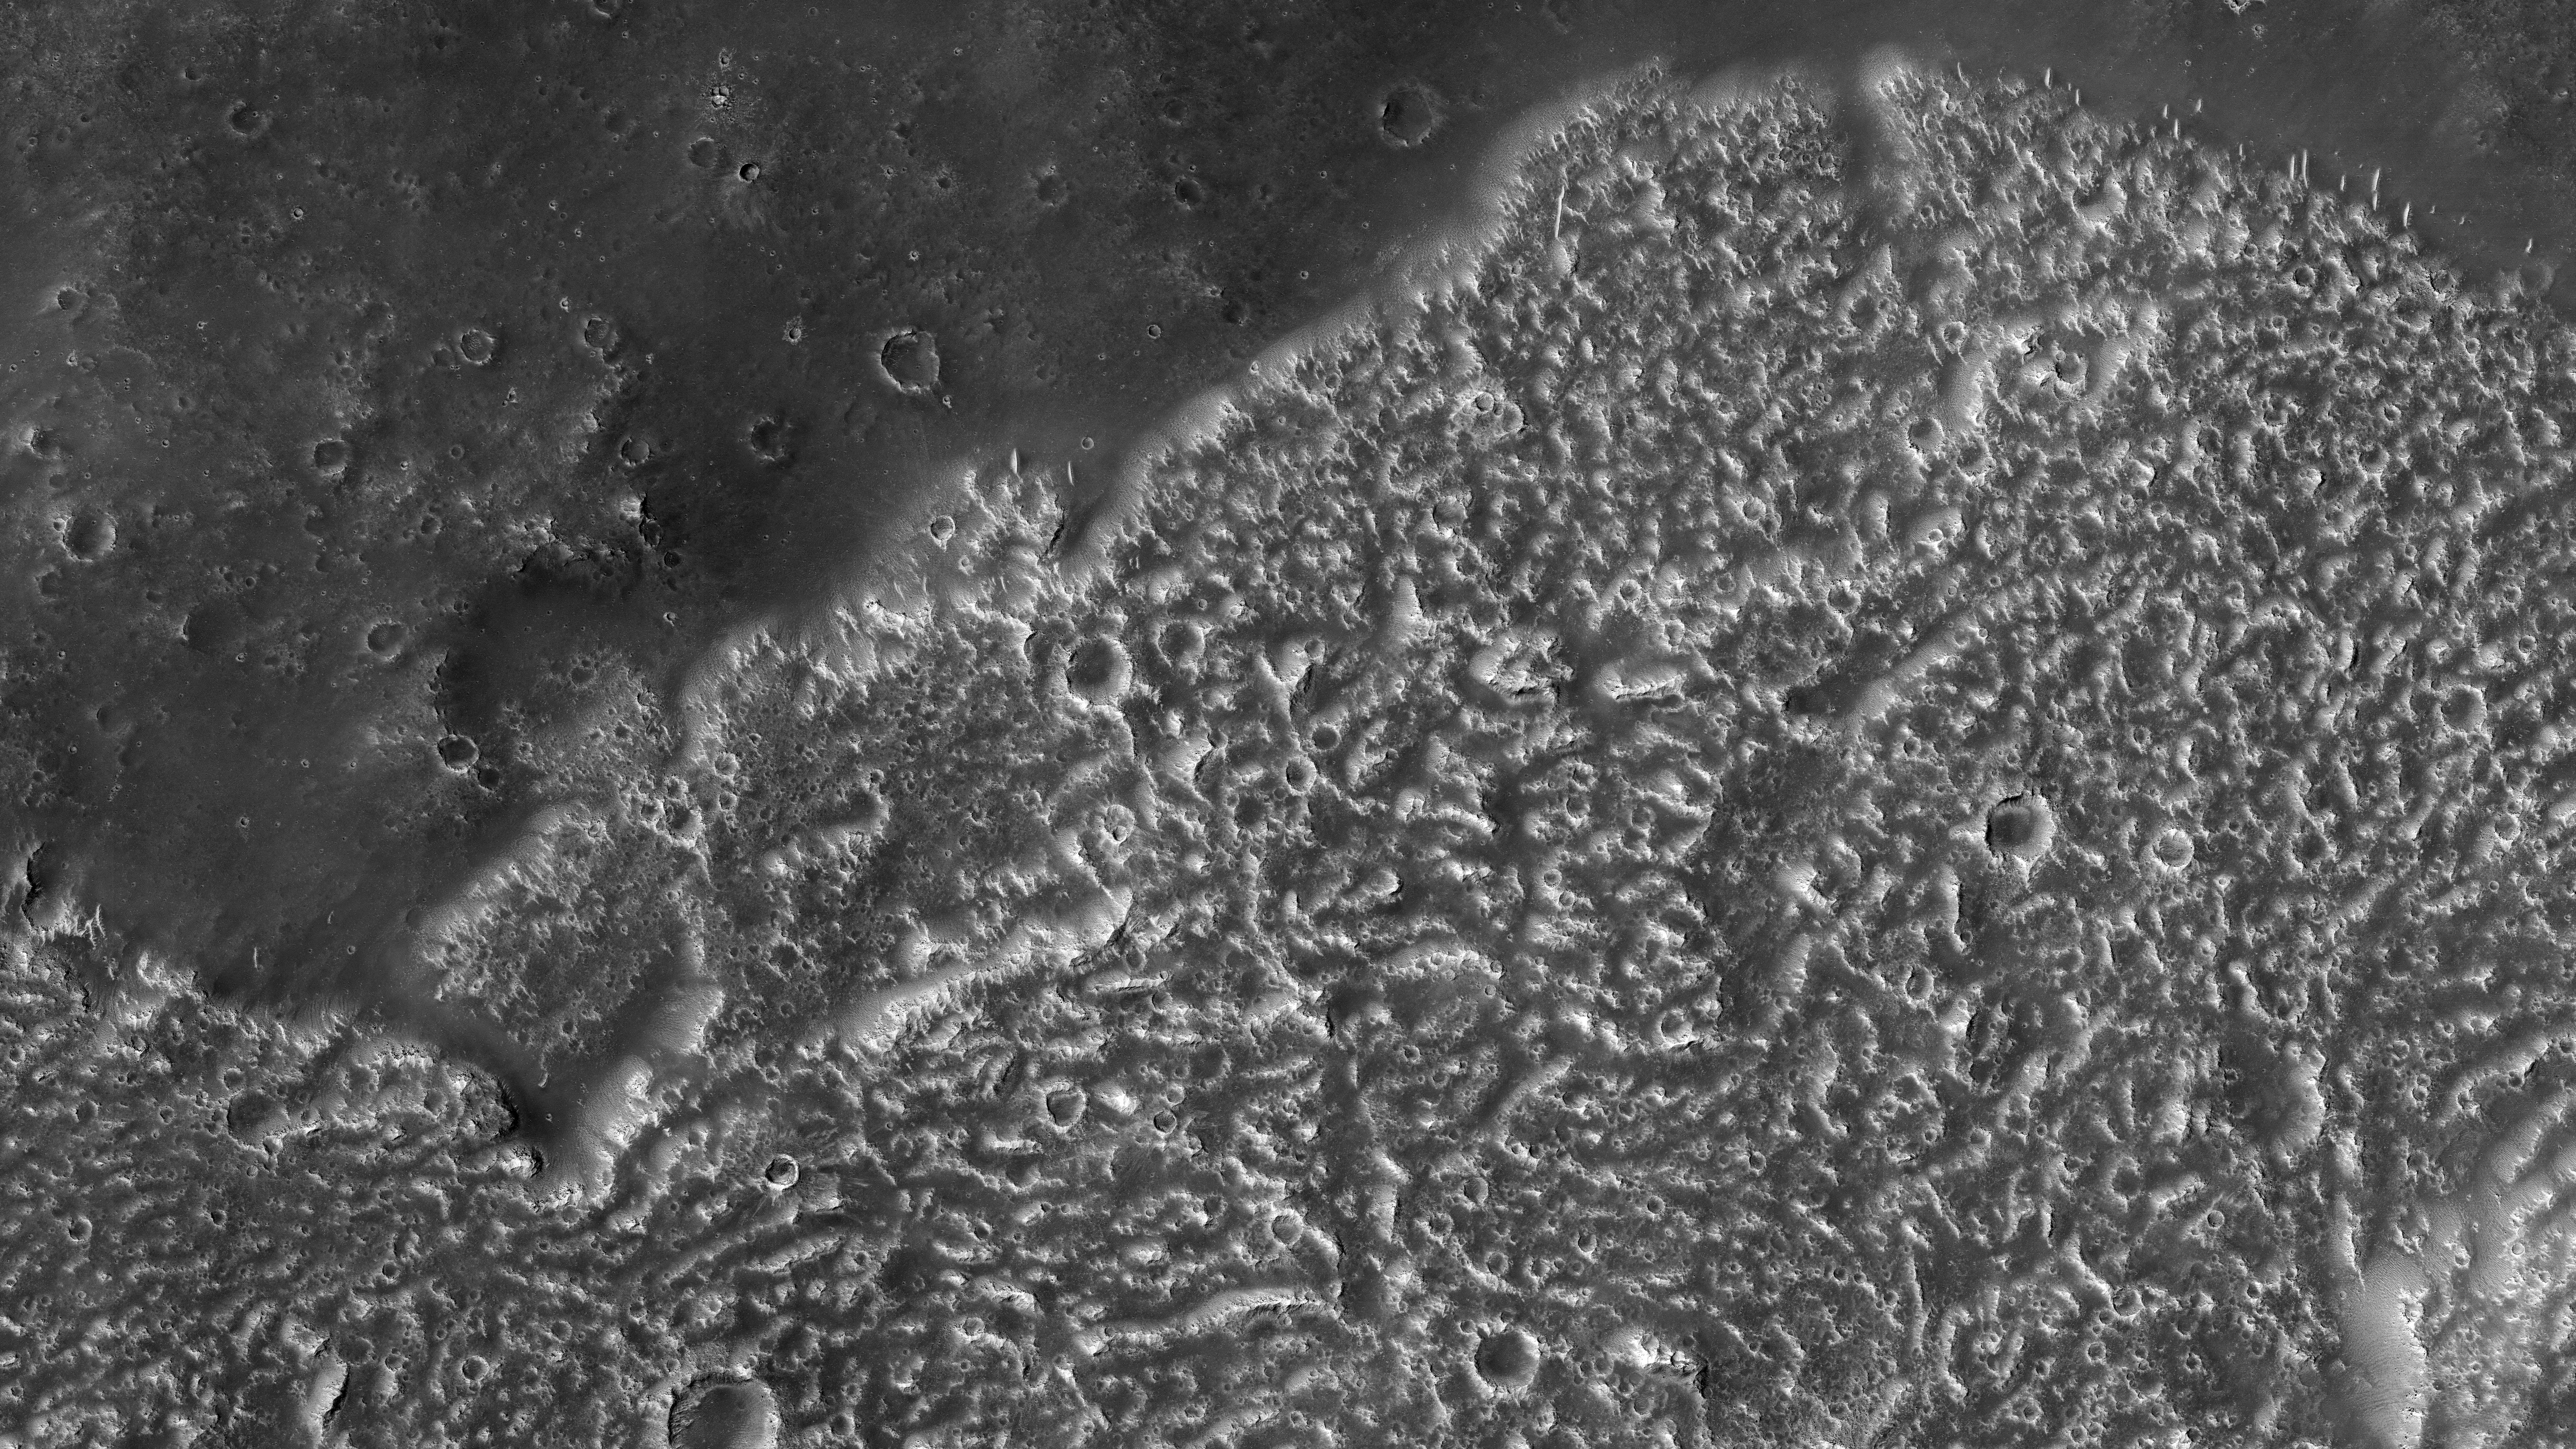 Planeta Marte. 5 NOI Imagini care au ULUIT Intreaga OMENIRE foto cratere